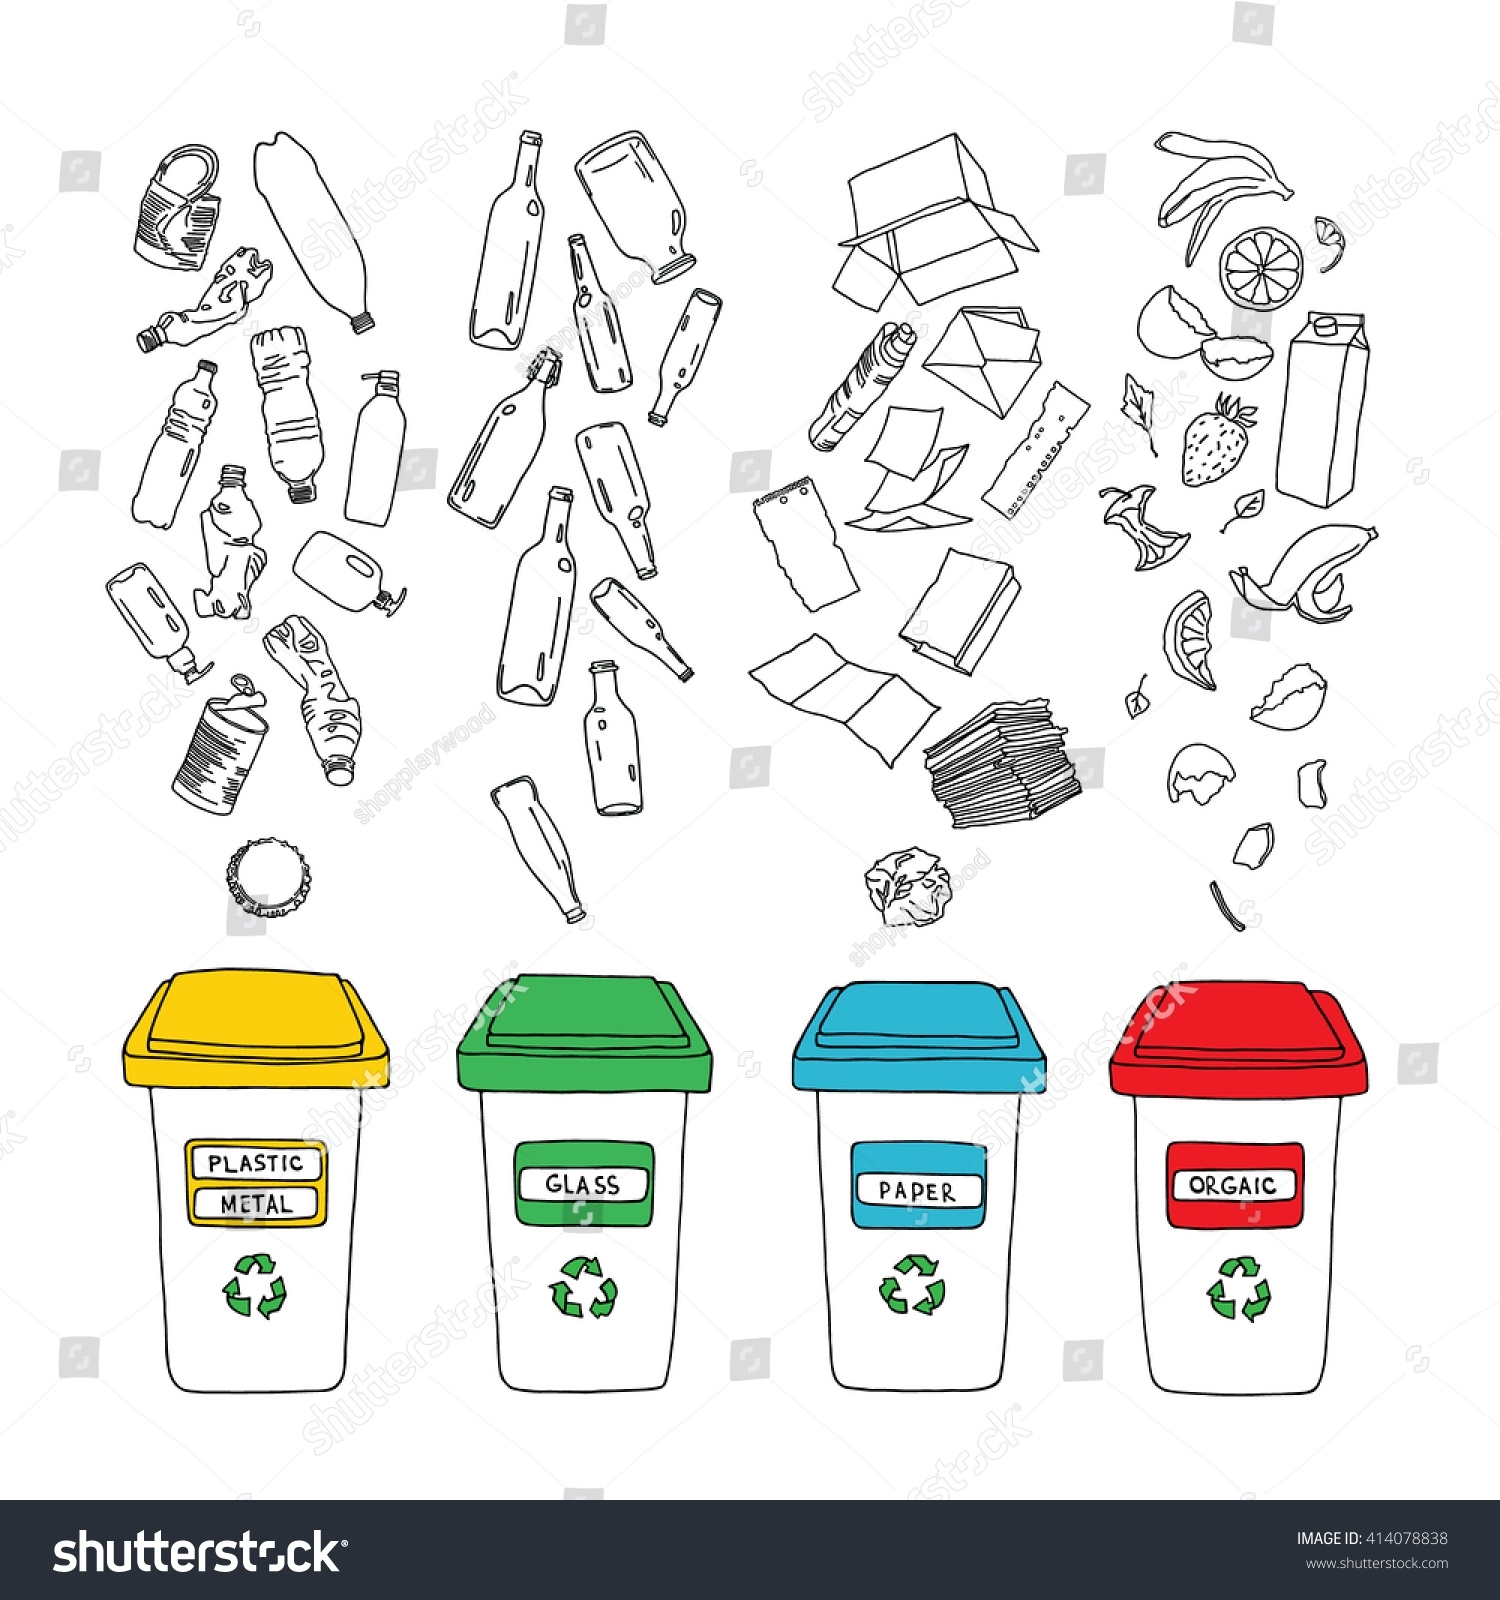 Рисунок на тему раздельный сбор мусора перспектива будущего